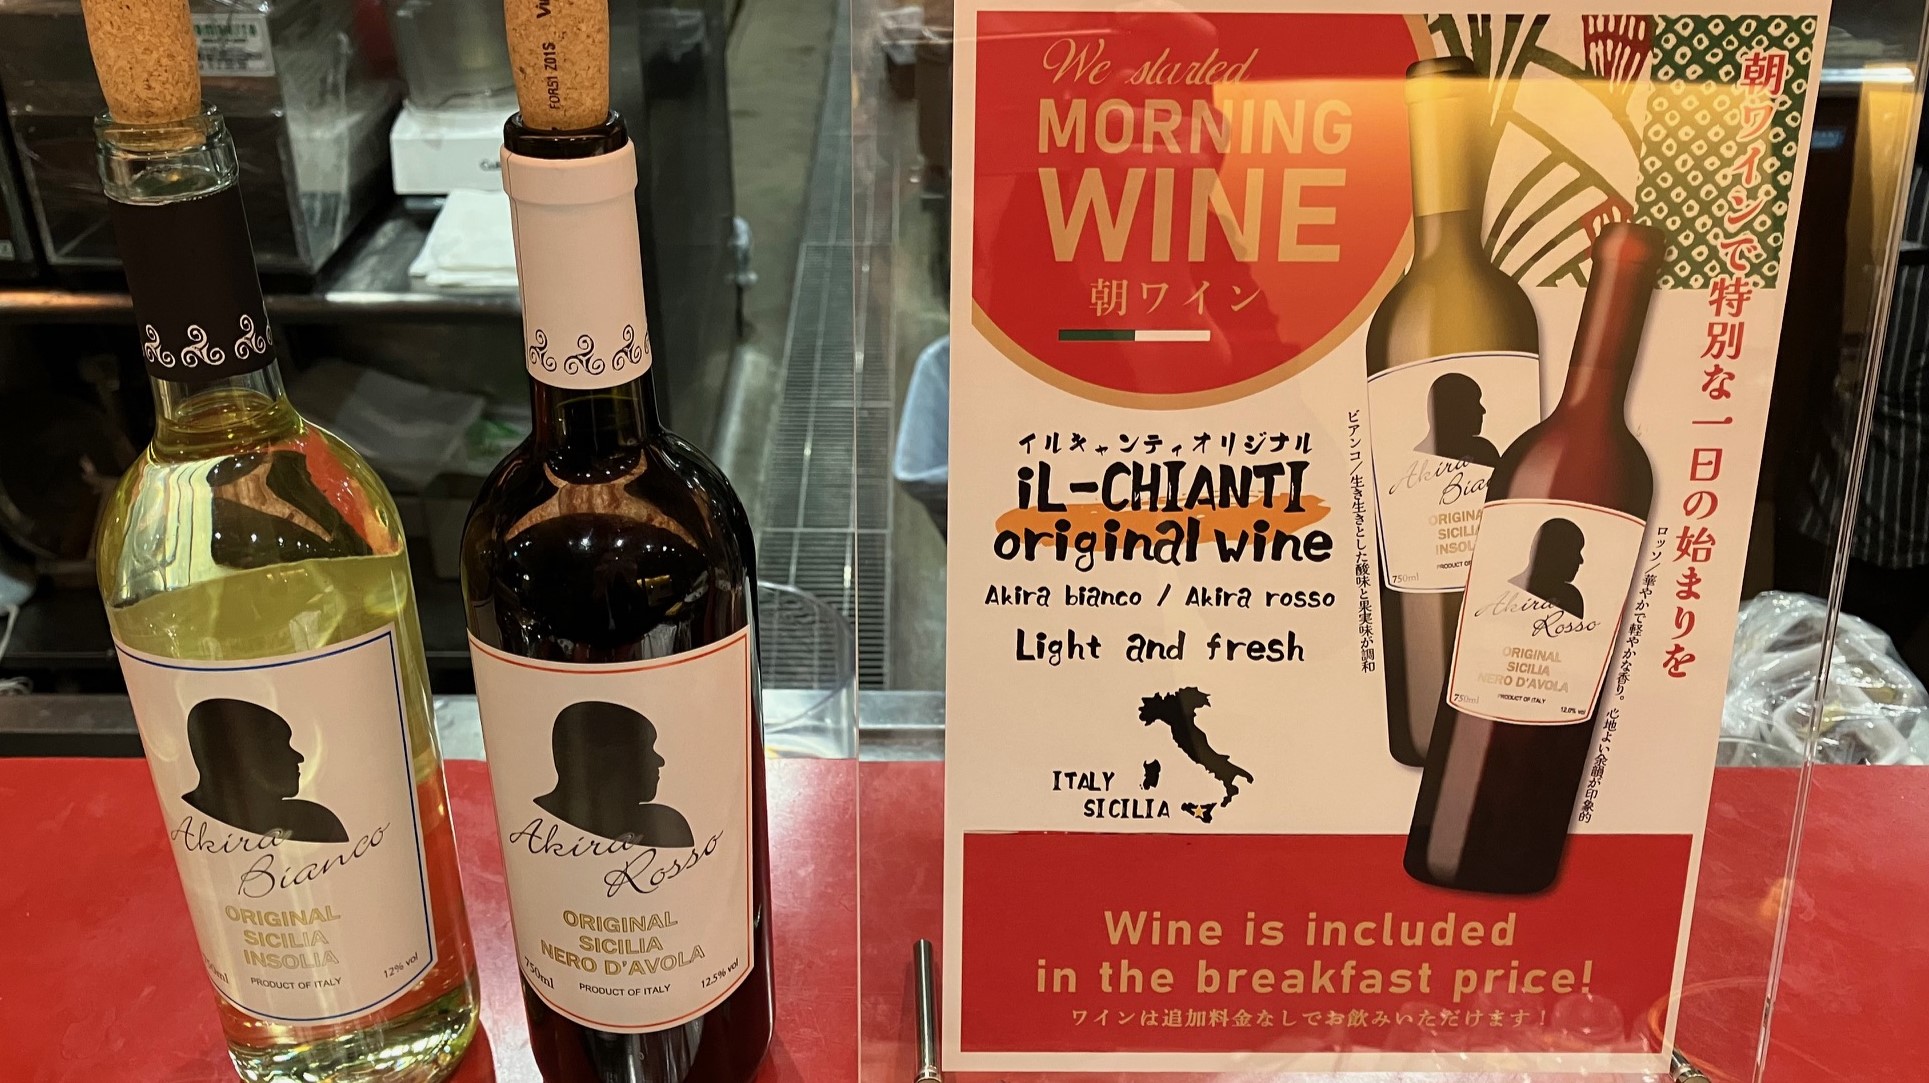 【朝食料理・ワイン】赤ワイン・白ワインと「朝ワイン」で特別な一日をお過ごしください。